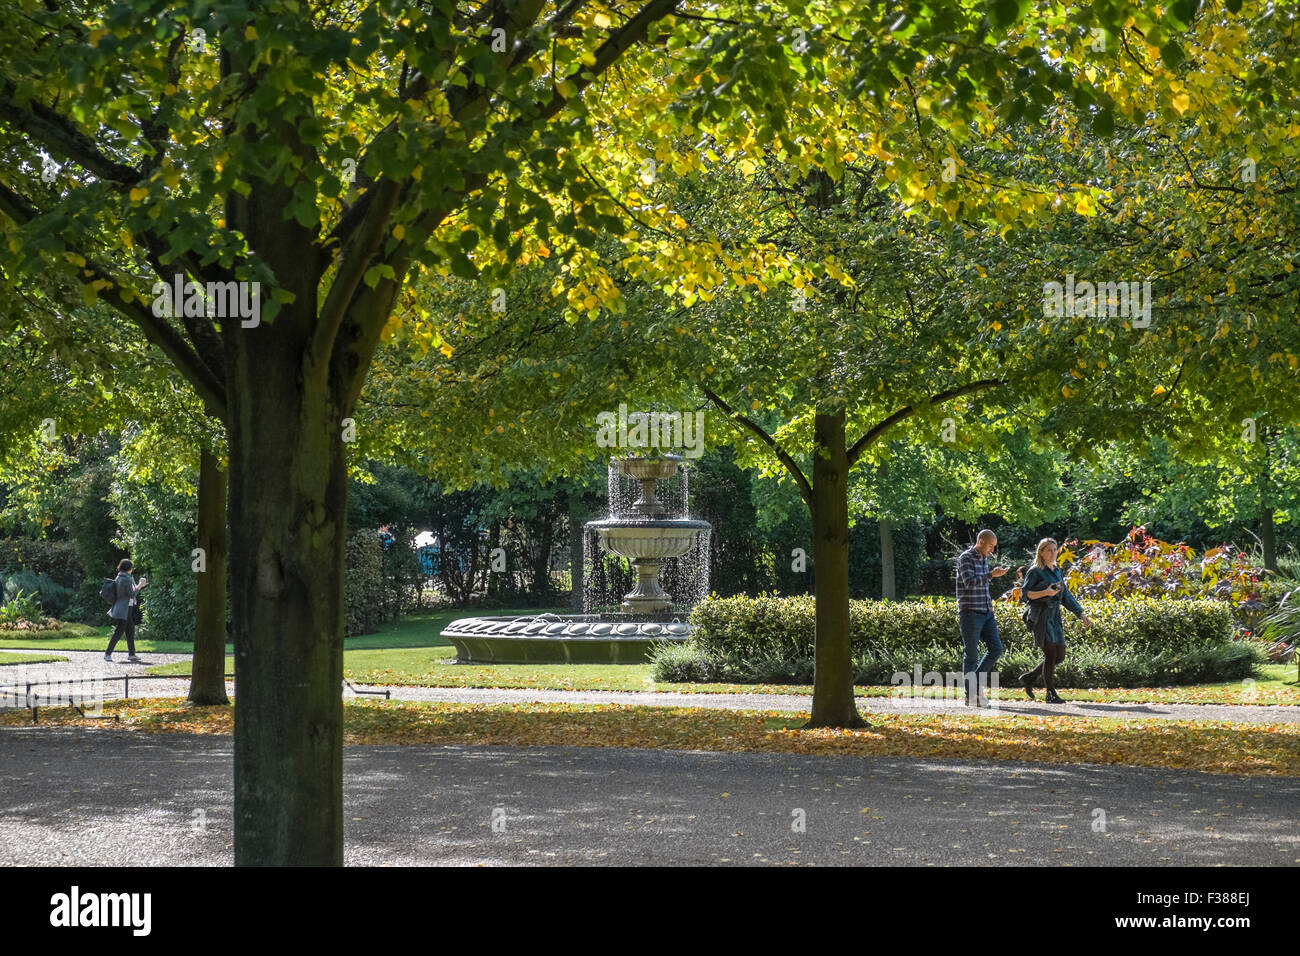 People walking through Regents Park enjoying the early autumn sunshine, London, England UK Stock Photo